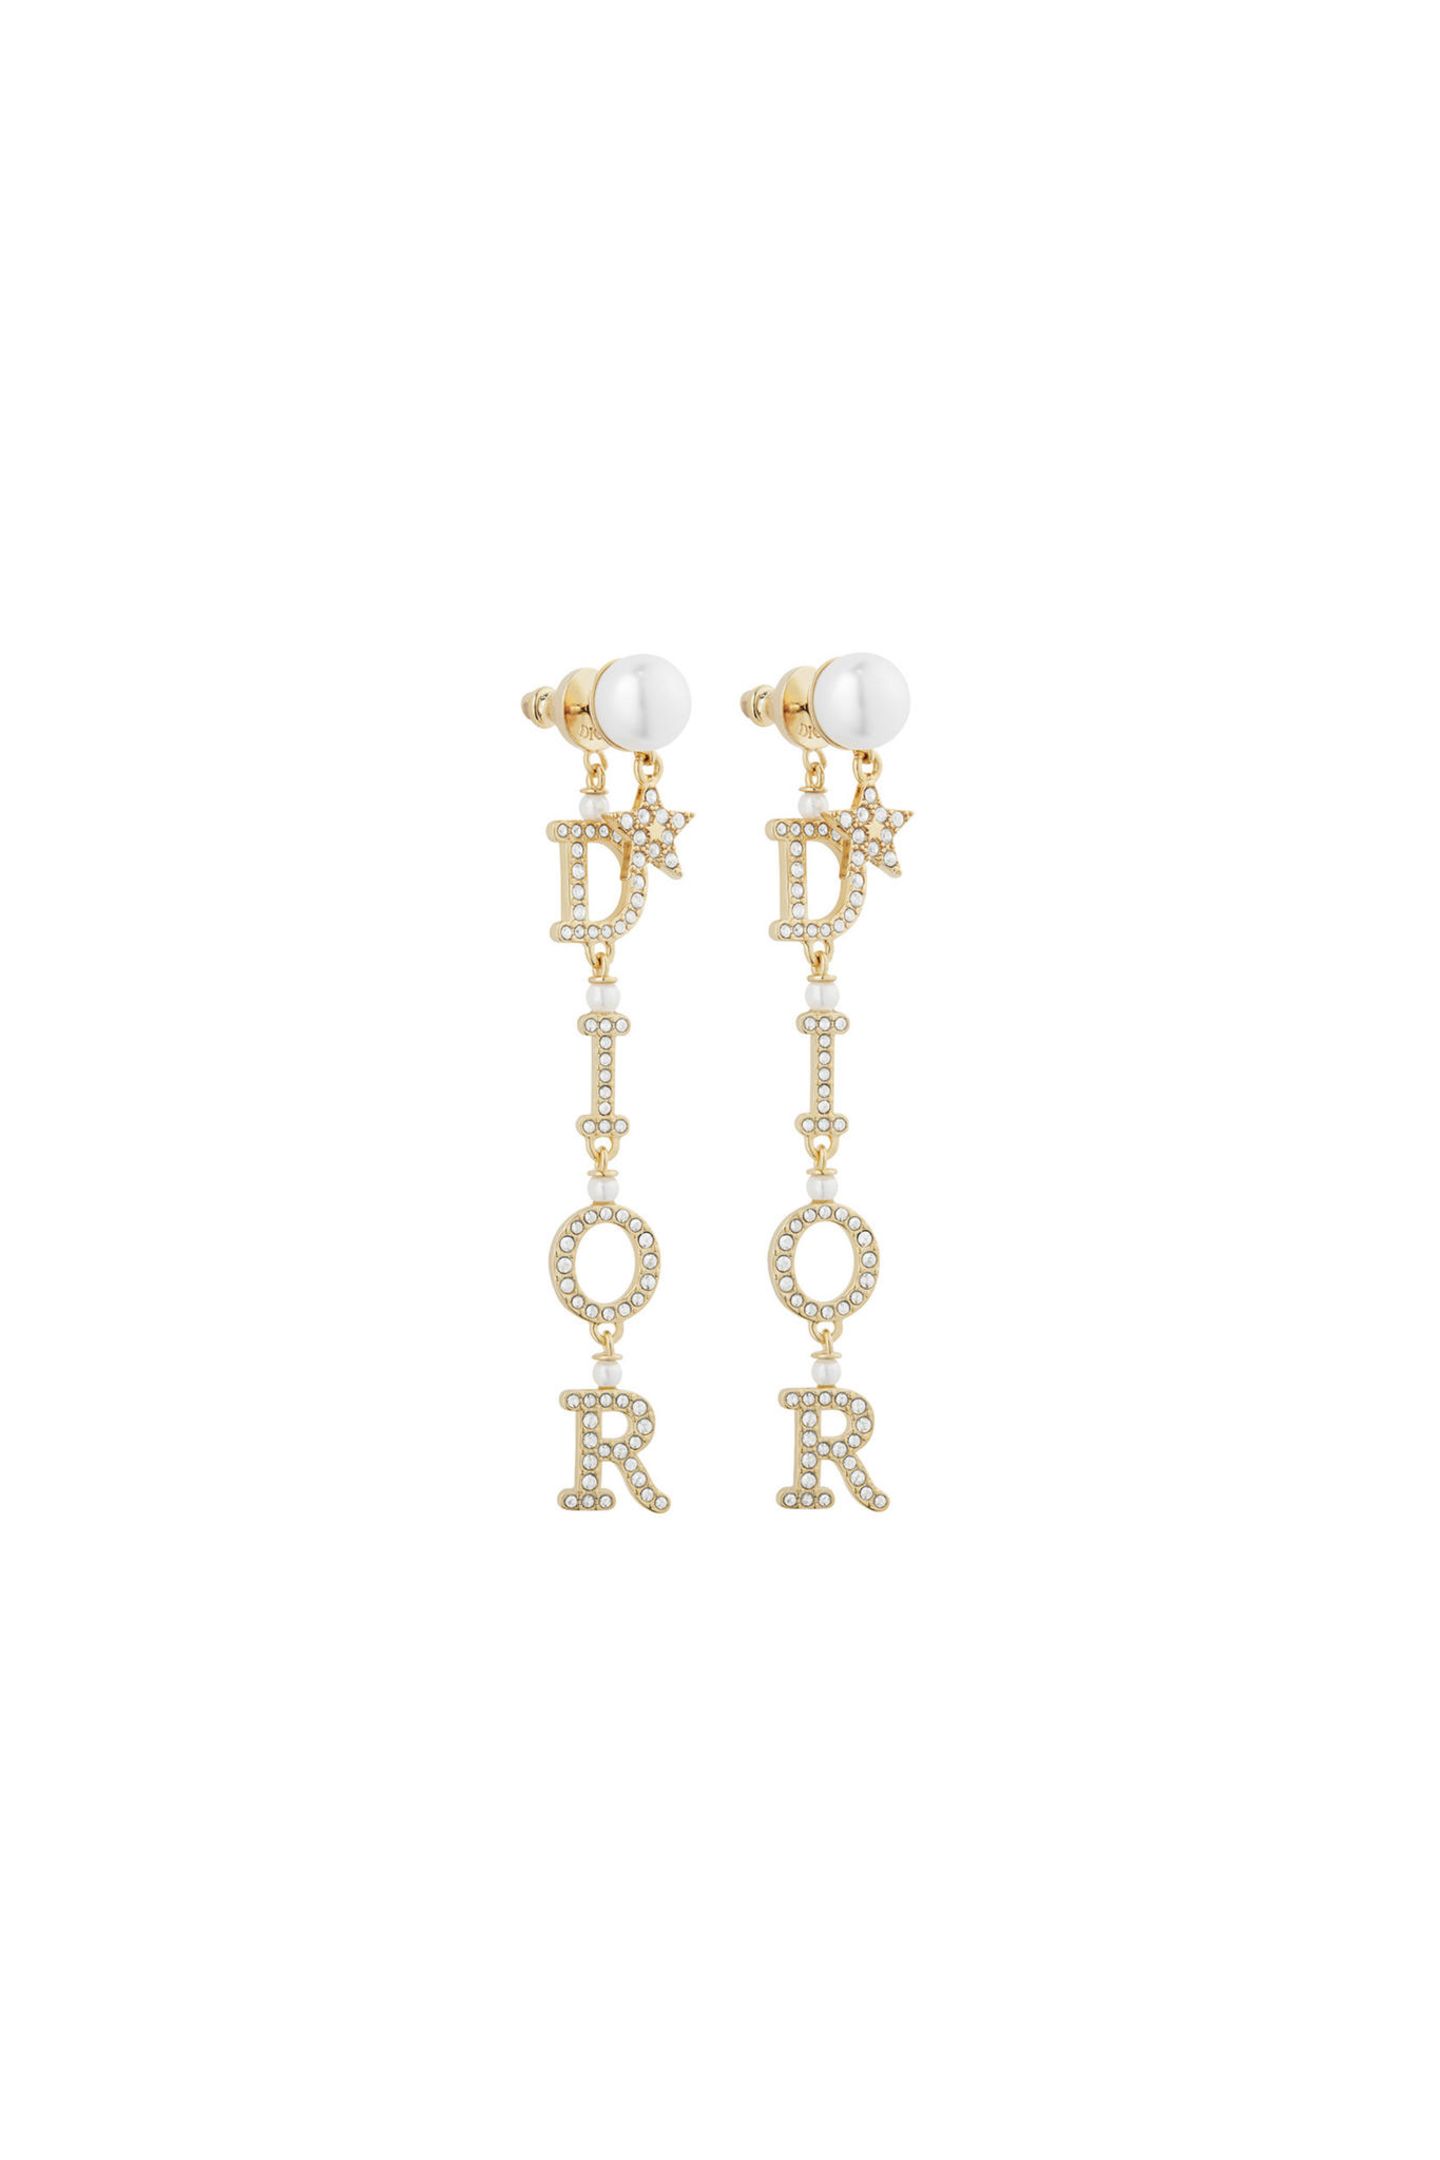 Mit hochwertigem Schmuck macht man nie etwas verkehrt. Mit diesen glitzernden Statement-Ohrringen von Dior noch weniger. So schön, dass wir sie eigentlich direkt selbst behalten möchten. Ca. 770 Euro.